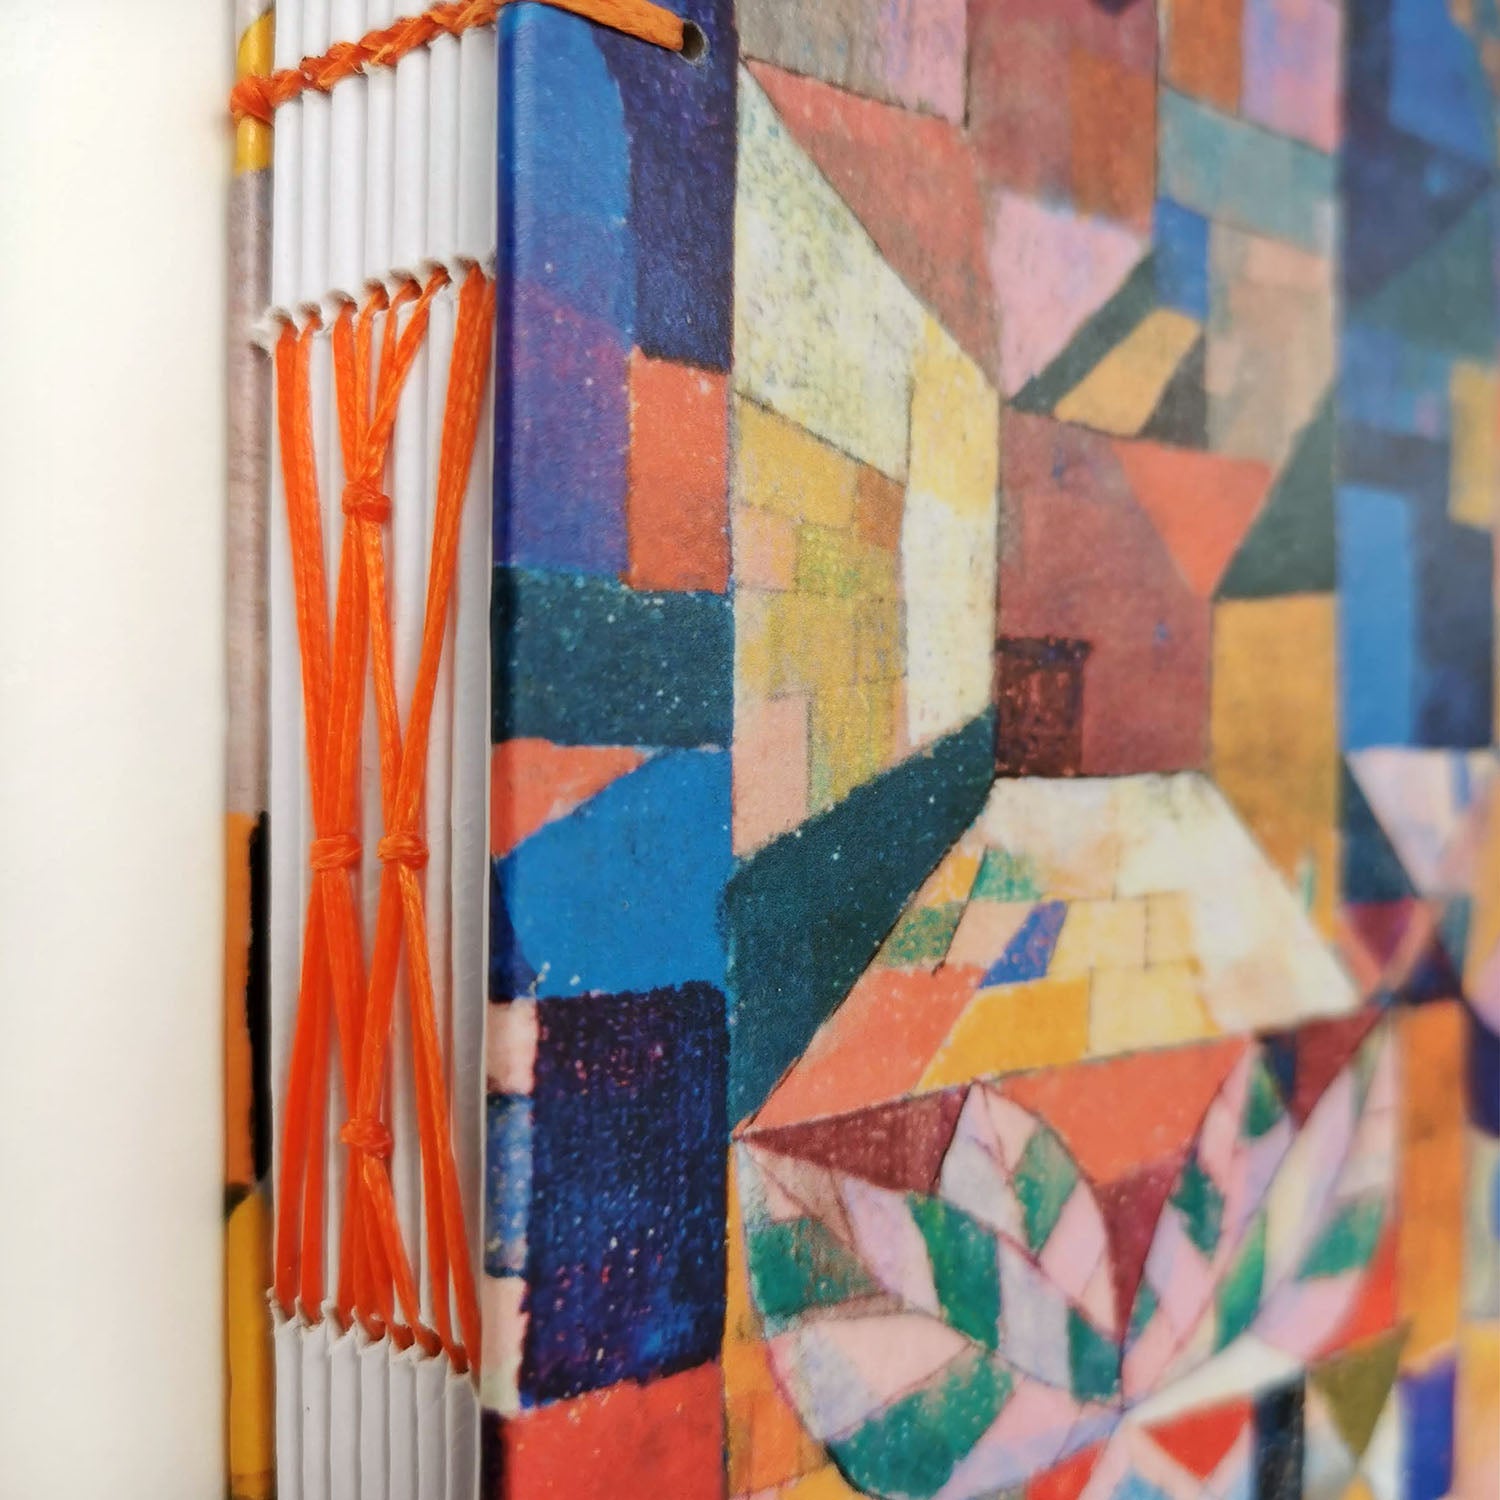 Χειροποίητo Σημειωματάριo με Βυζαντινή Βιβλιοδεσία - Paul Klee - Colorful Architecture